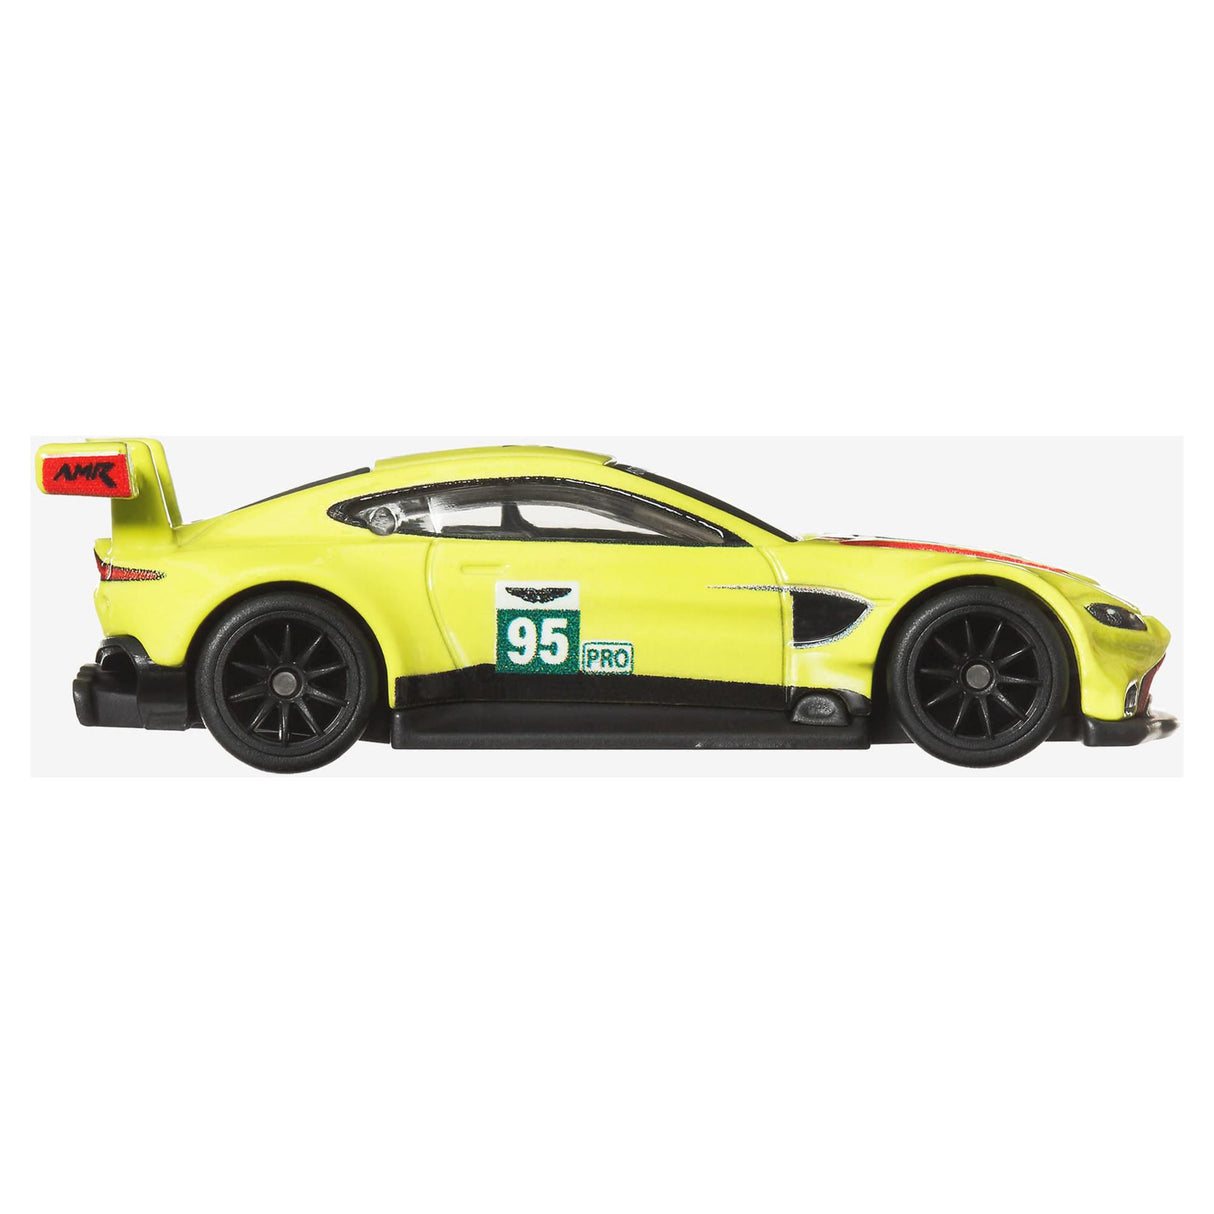 Hot Wheels Aston Martin Vantage GTE